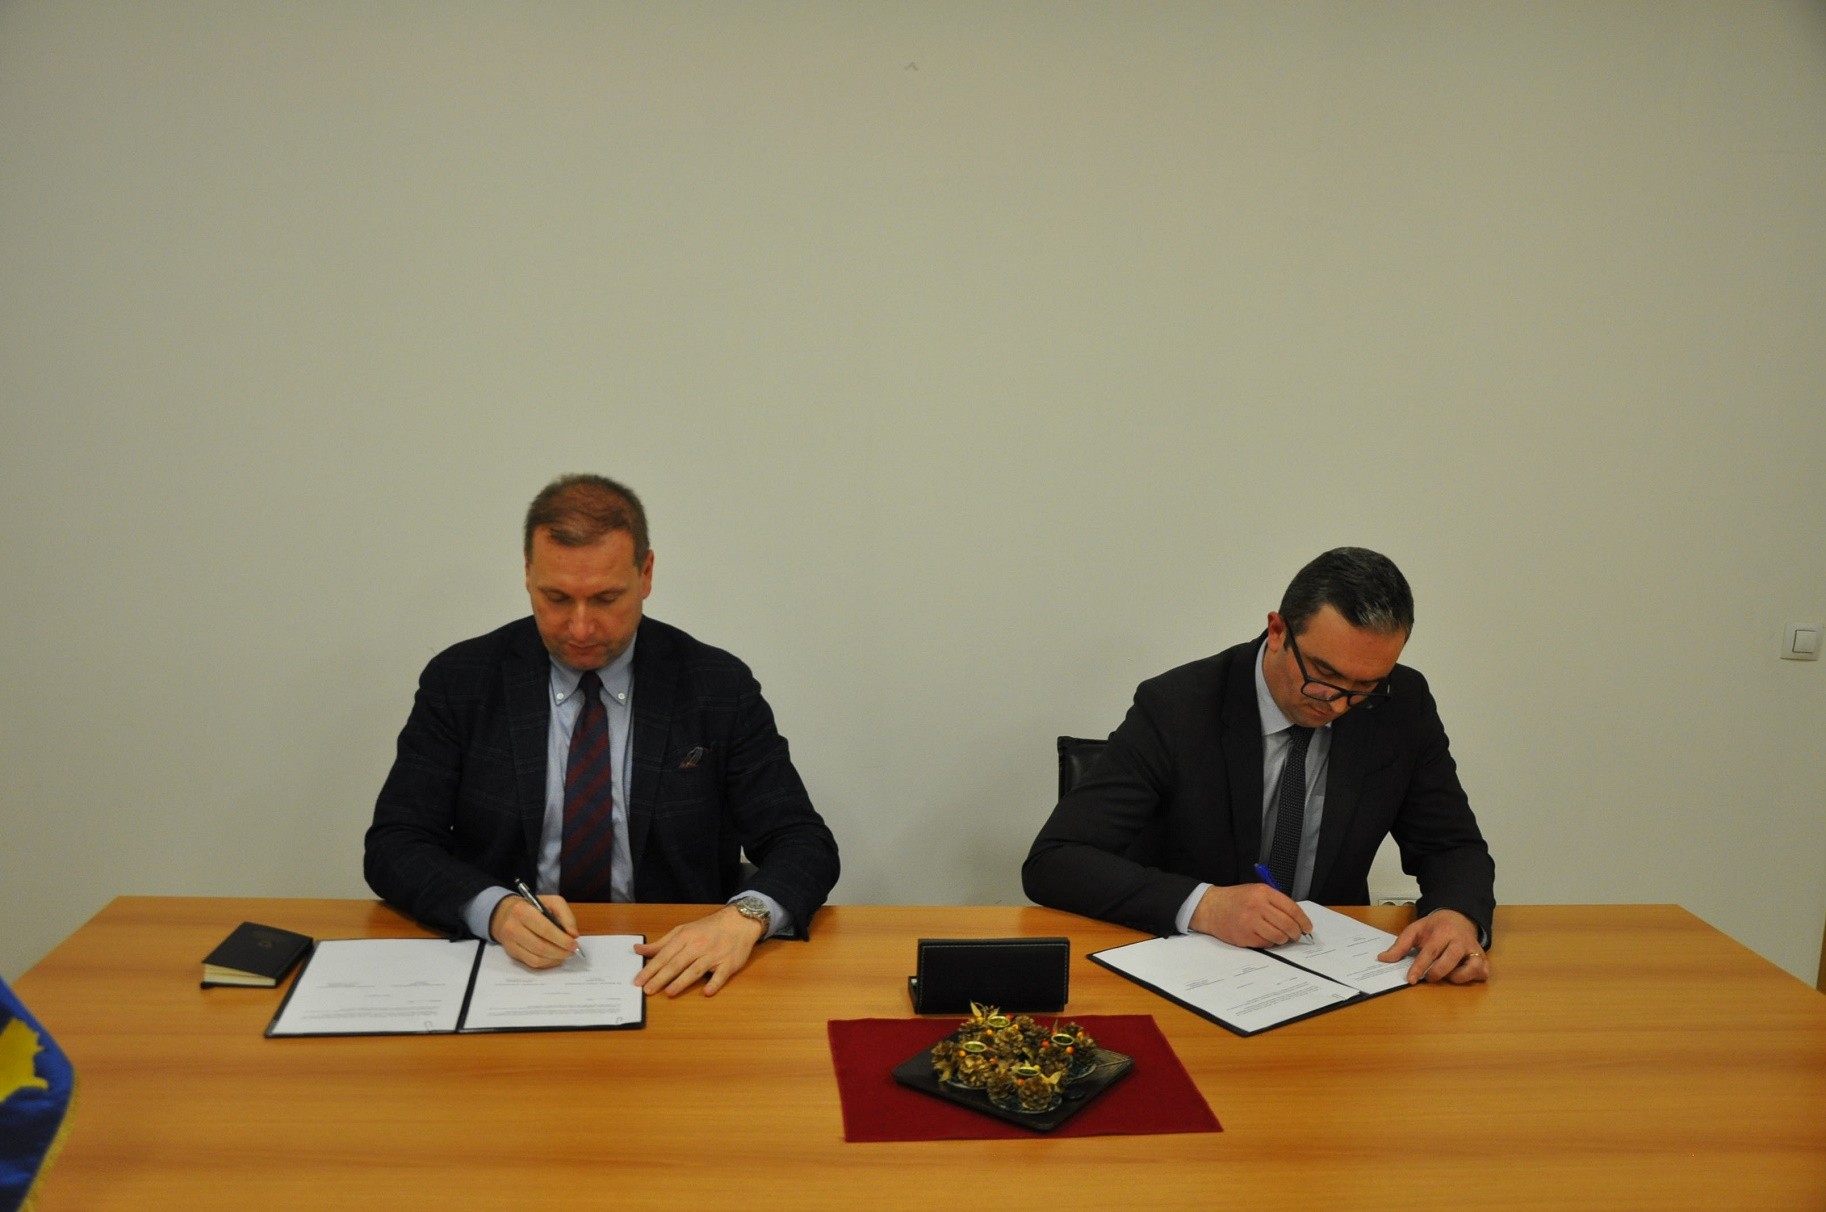 MPB dhe Autoriteti i Aviacionit Civil nënshkruan Memorandum të Mirëkuptimit